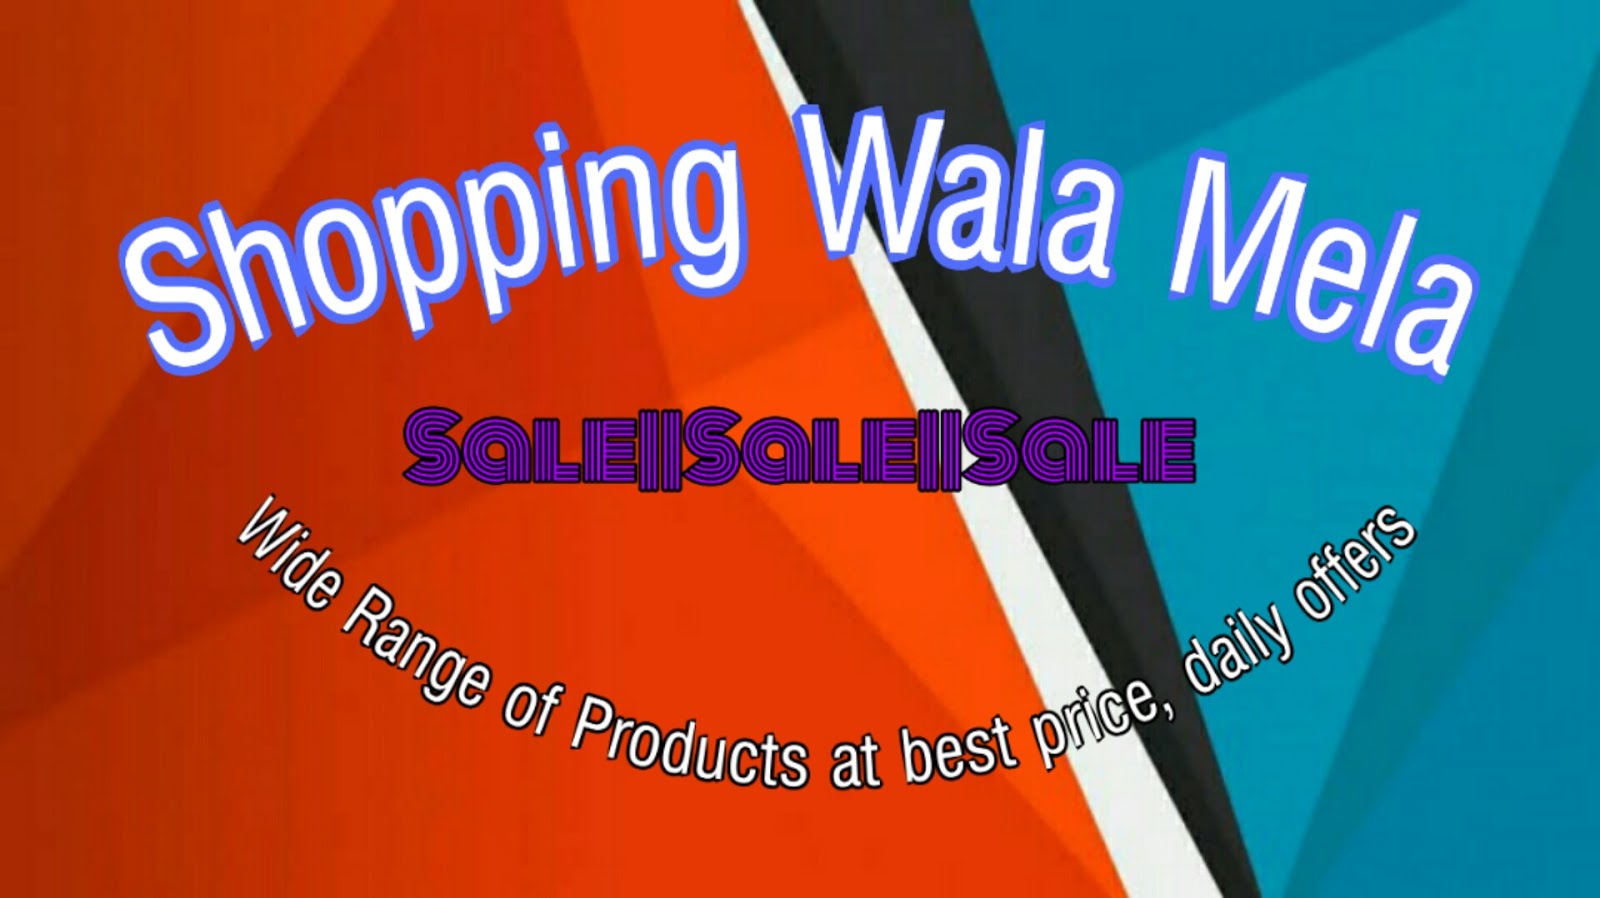 Shopping wala Mela